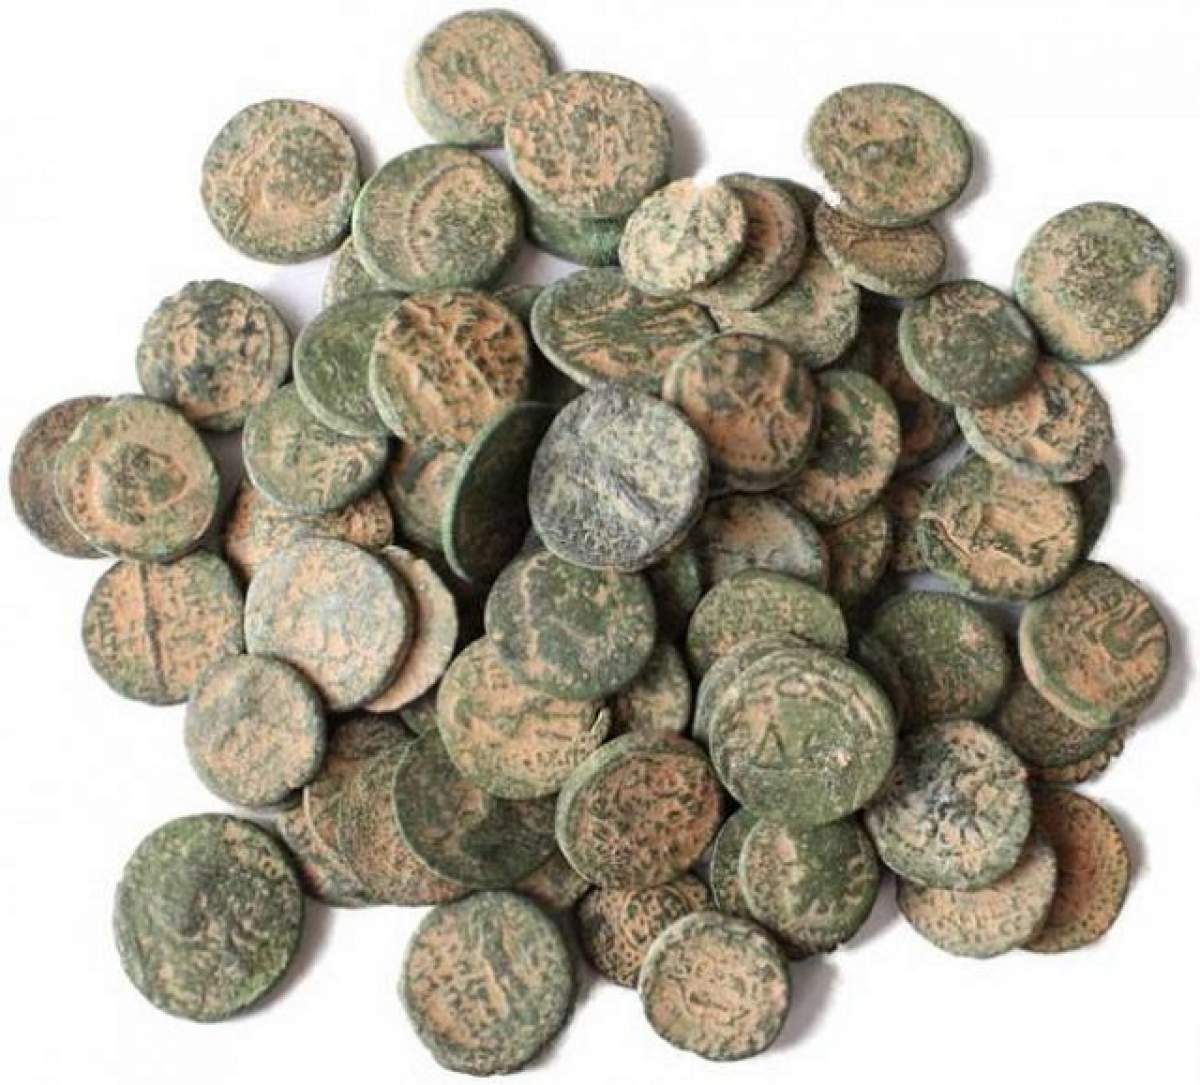 Peste 700 de monede antice recuperate de la traficanţii de antichităţi după mai multe percheziţii în şase judeţe şi în Bucureşti